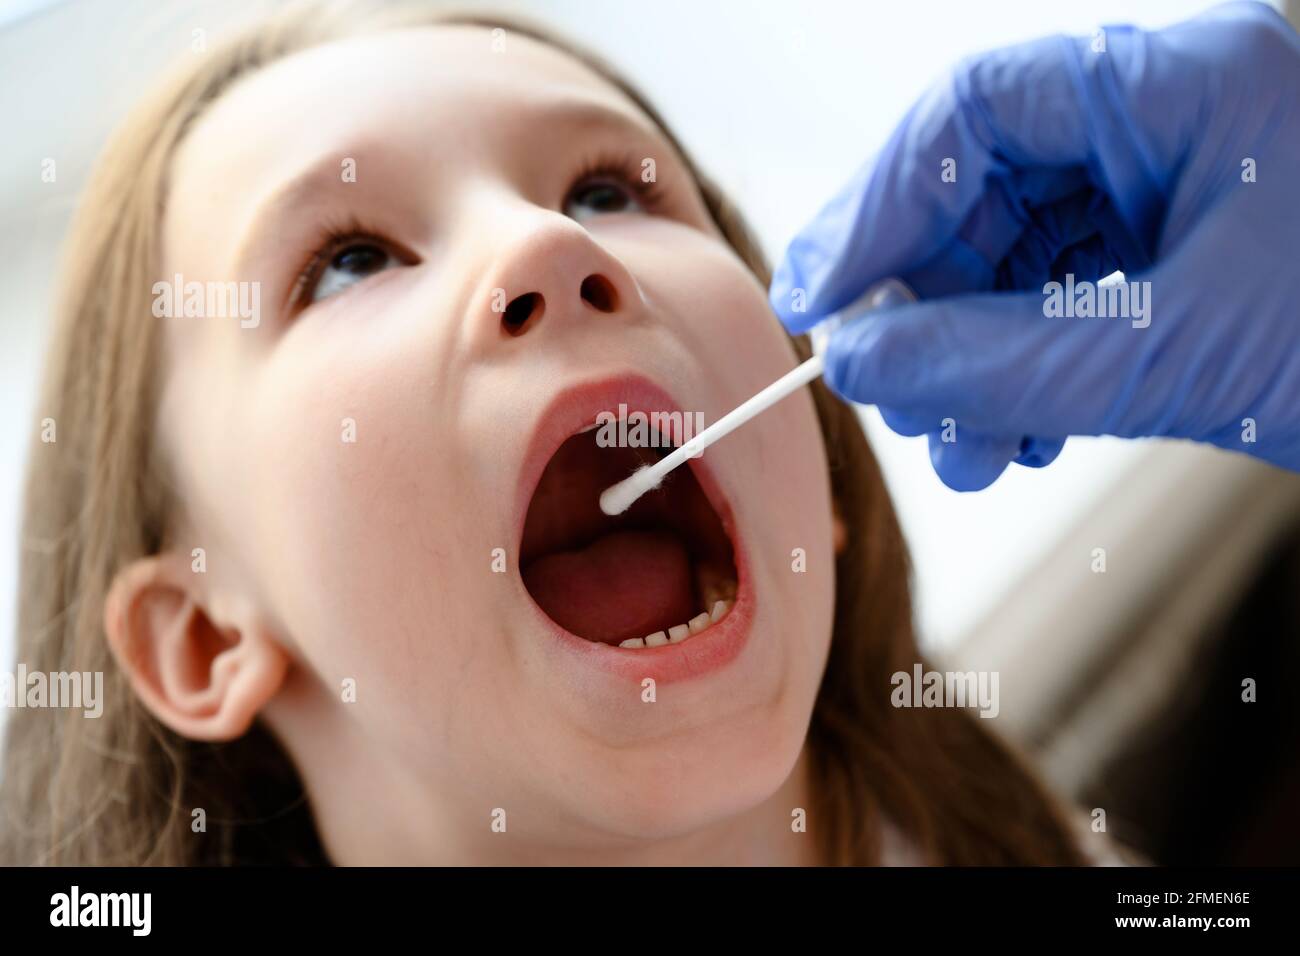 Kid ouvre la bouche pour le test COVID-19, le médecin tient un écouvillon pour l'échantillon de salive de l'enfant mignon pendant la pandémie du coronavirus. Infirmière main et petite fille visage cl Banque D'Images